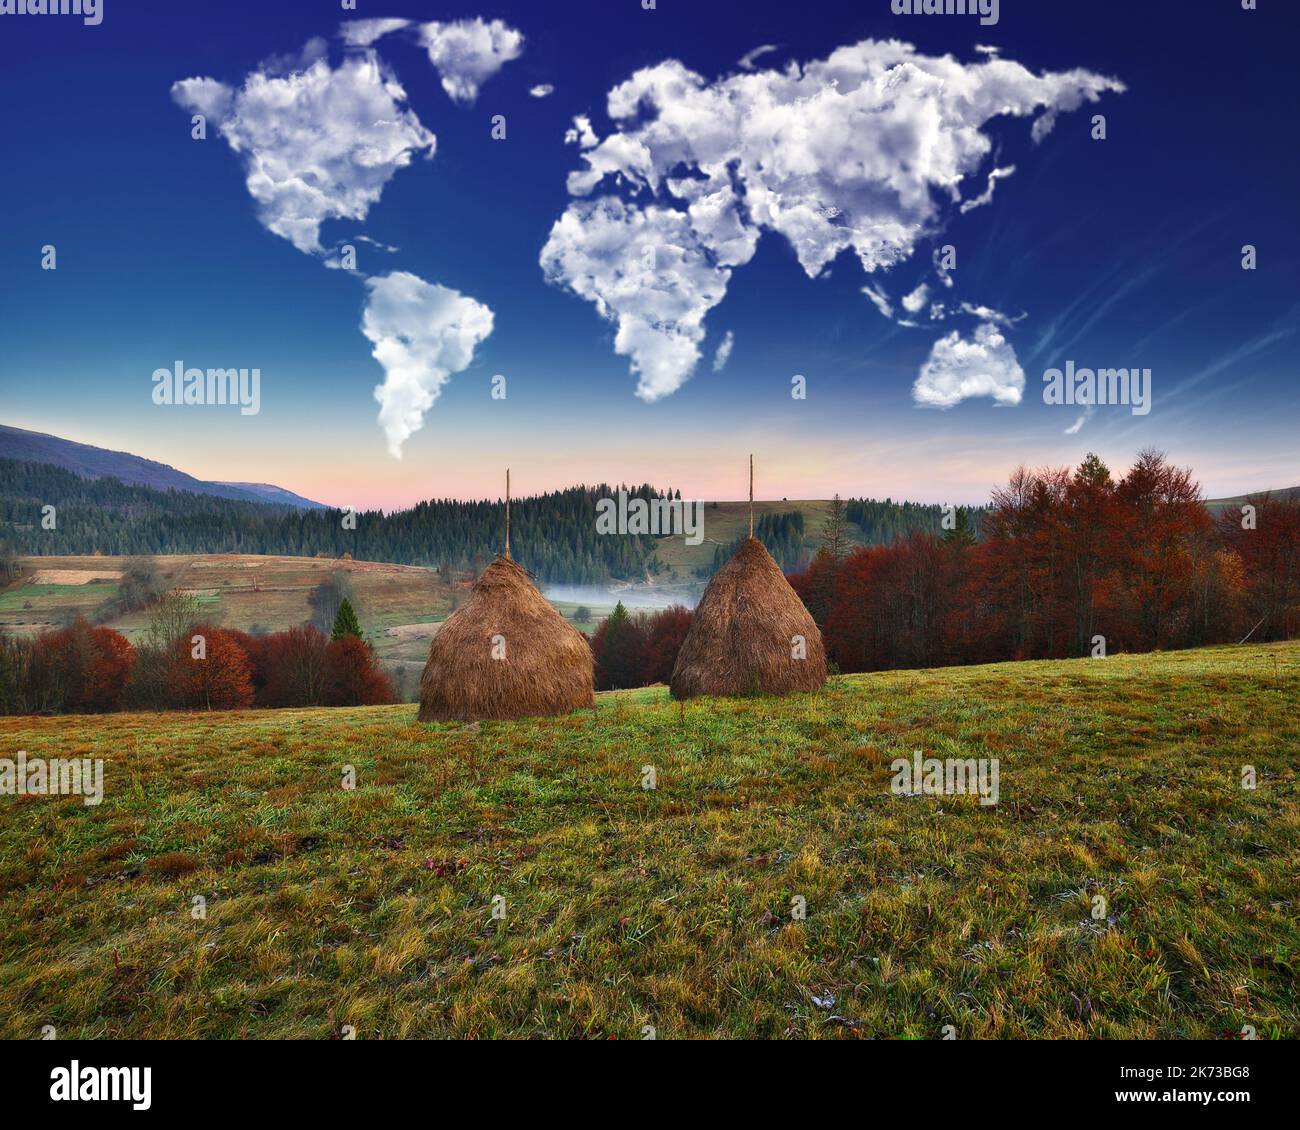 Wolken in Form einer Weltkarte über den Bergen. Herbstdämmerung in den Karpaten. Reise- und Landschaftskonzept Stockfoto